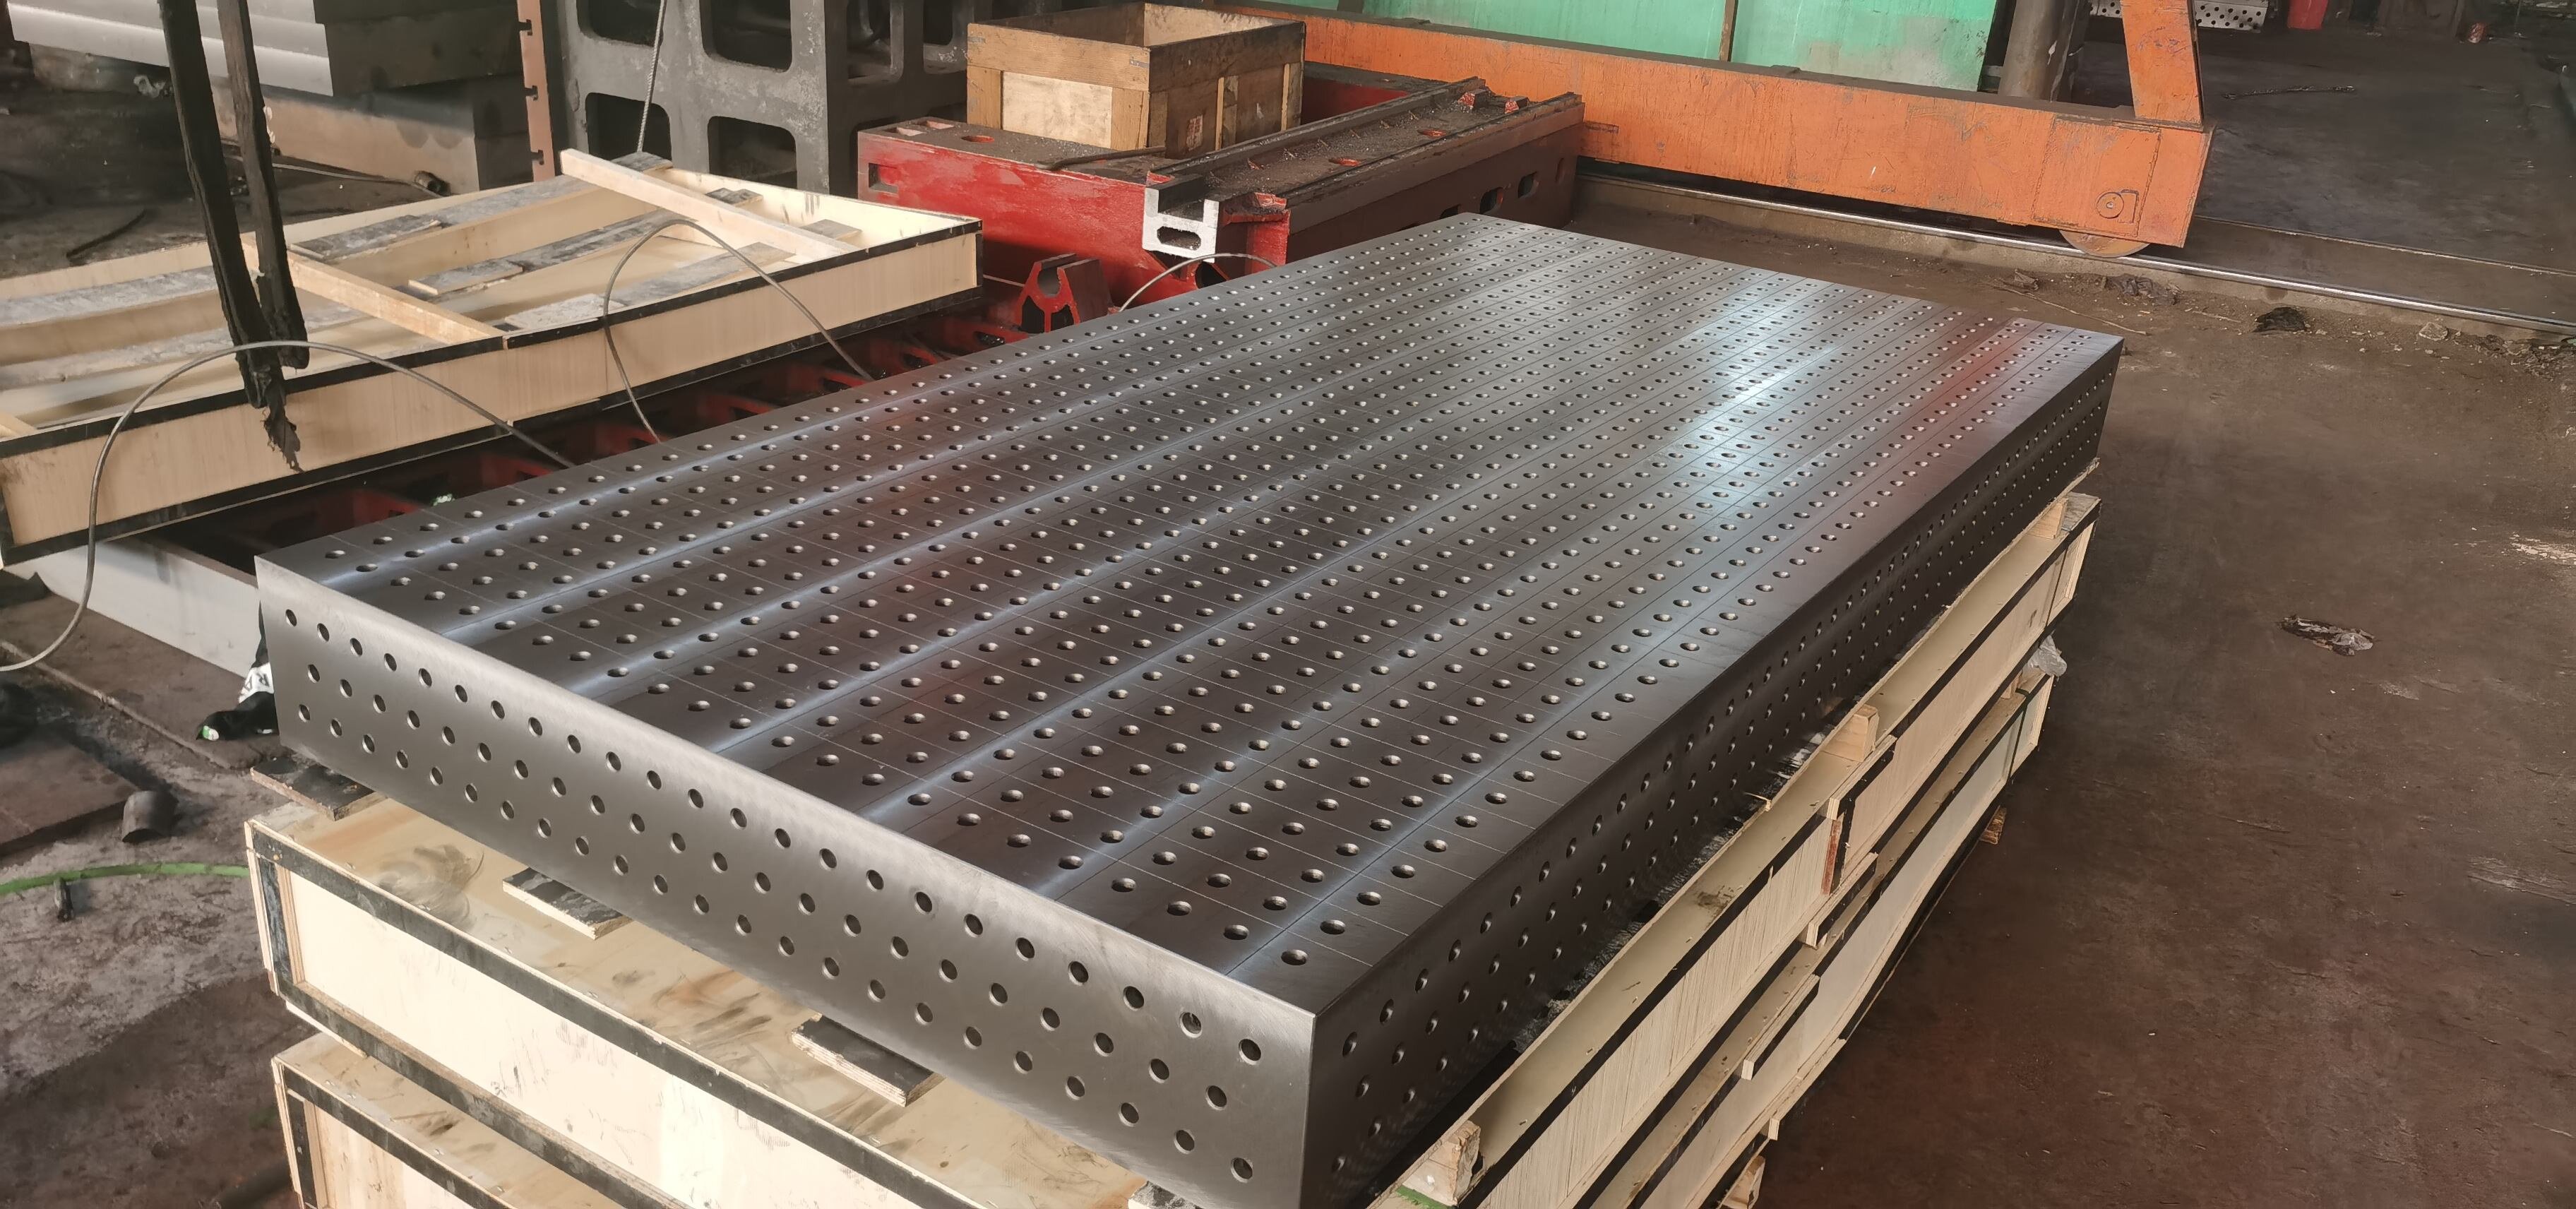 铸铁三维柔性焊接平台 三维多功能柔性焊接平台